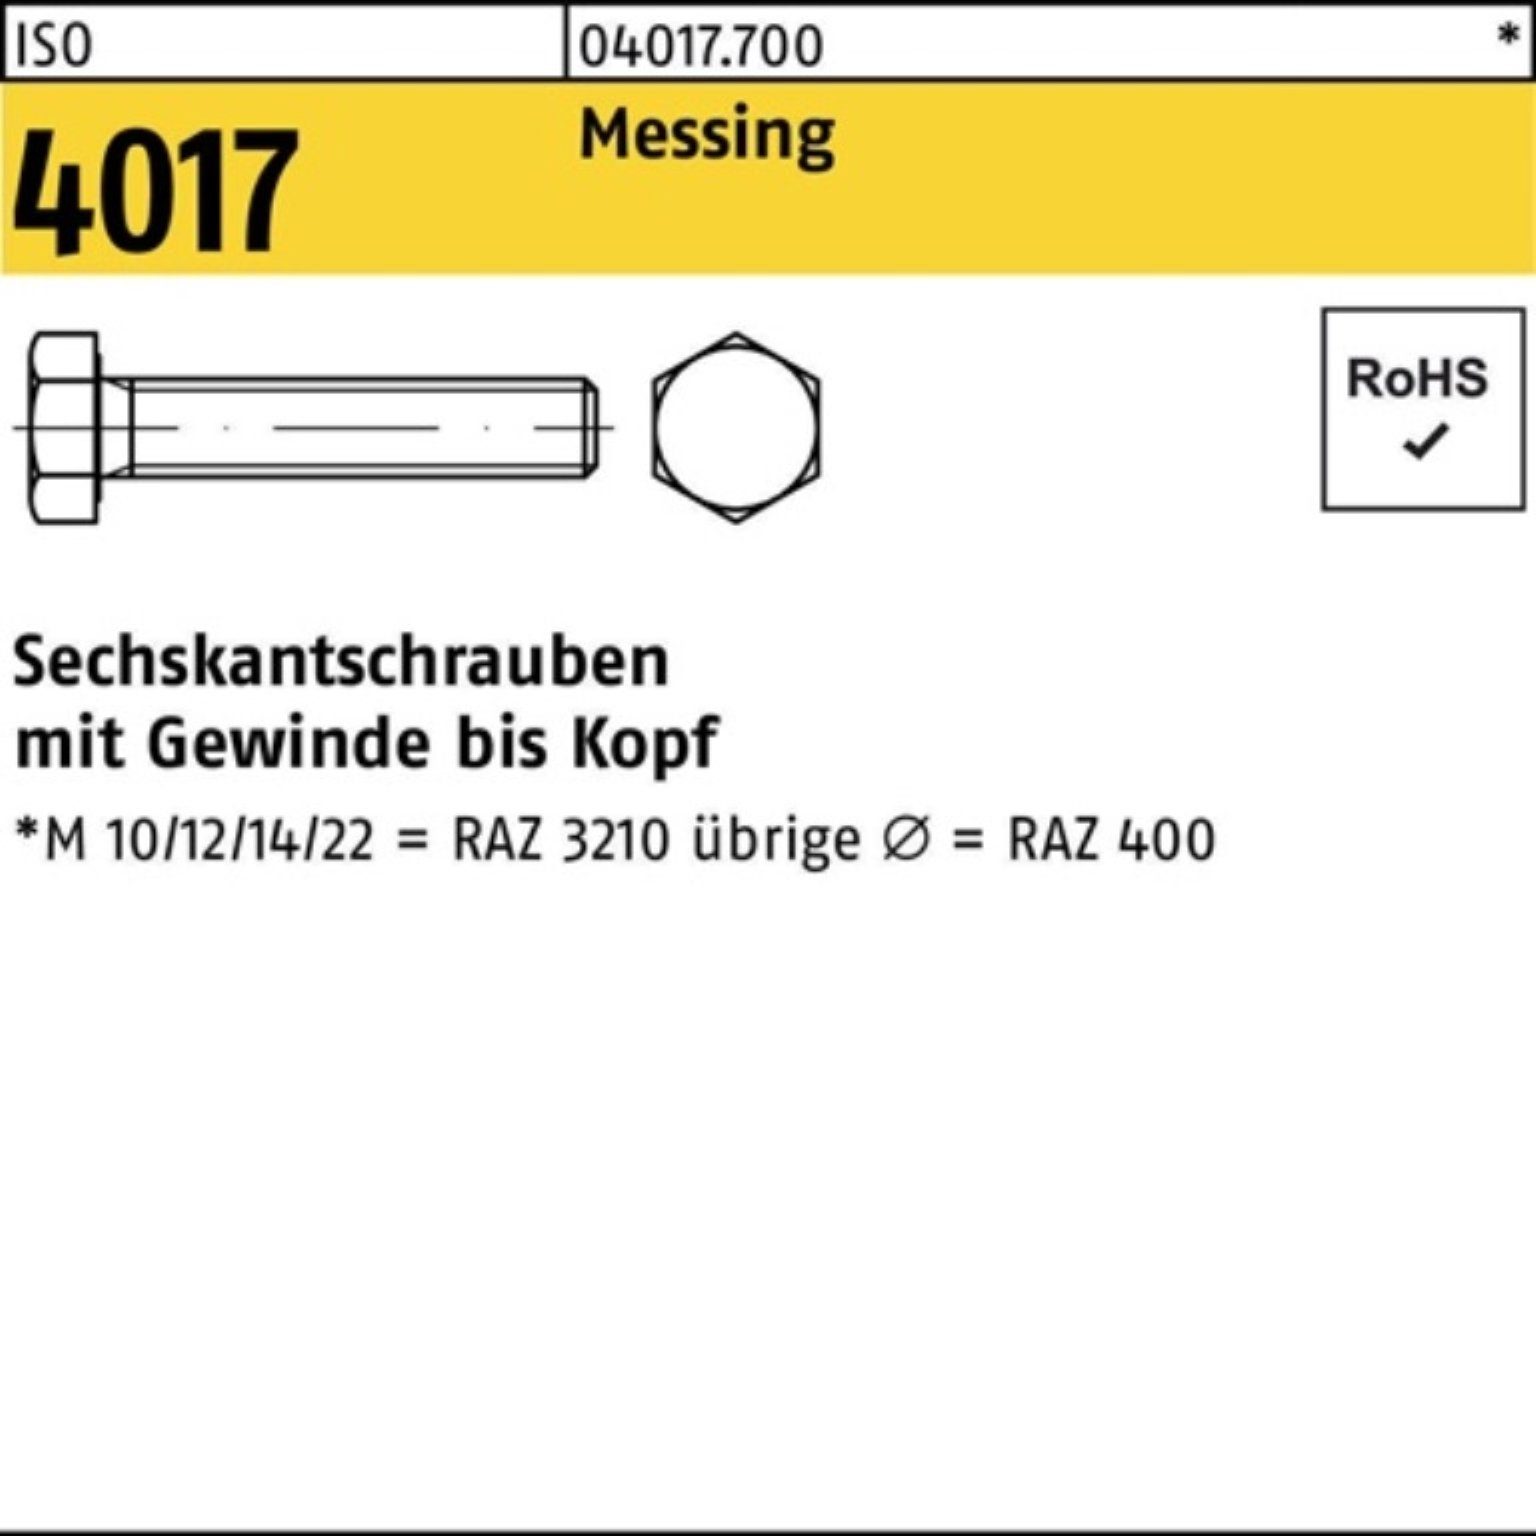 Bufab Sechskantschraube 100er Sechskantschraube Messing 4017 VG 30 Stück M8x Pack 100 ISO ISO